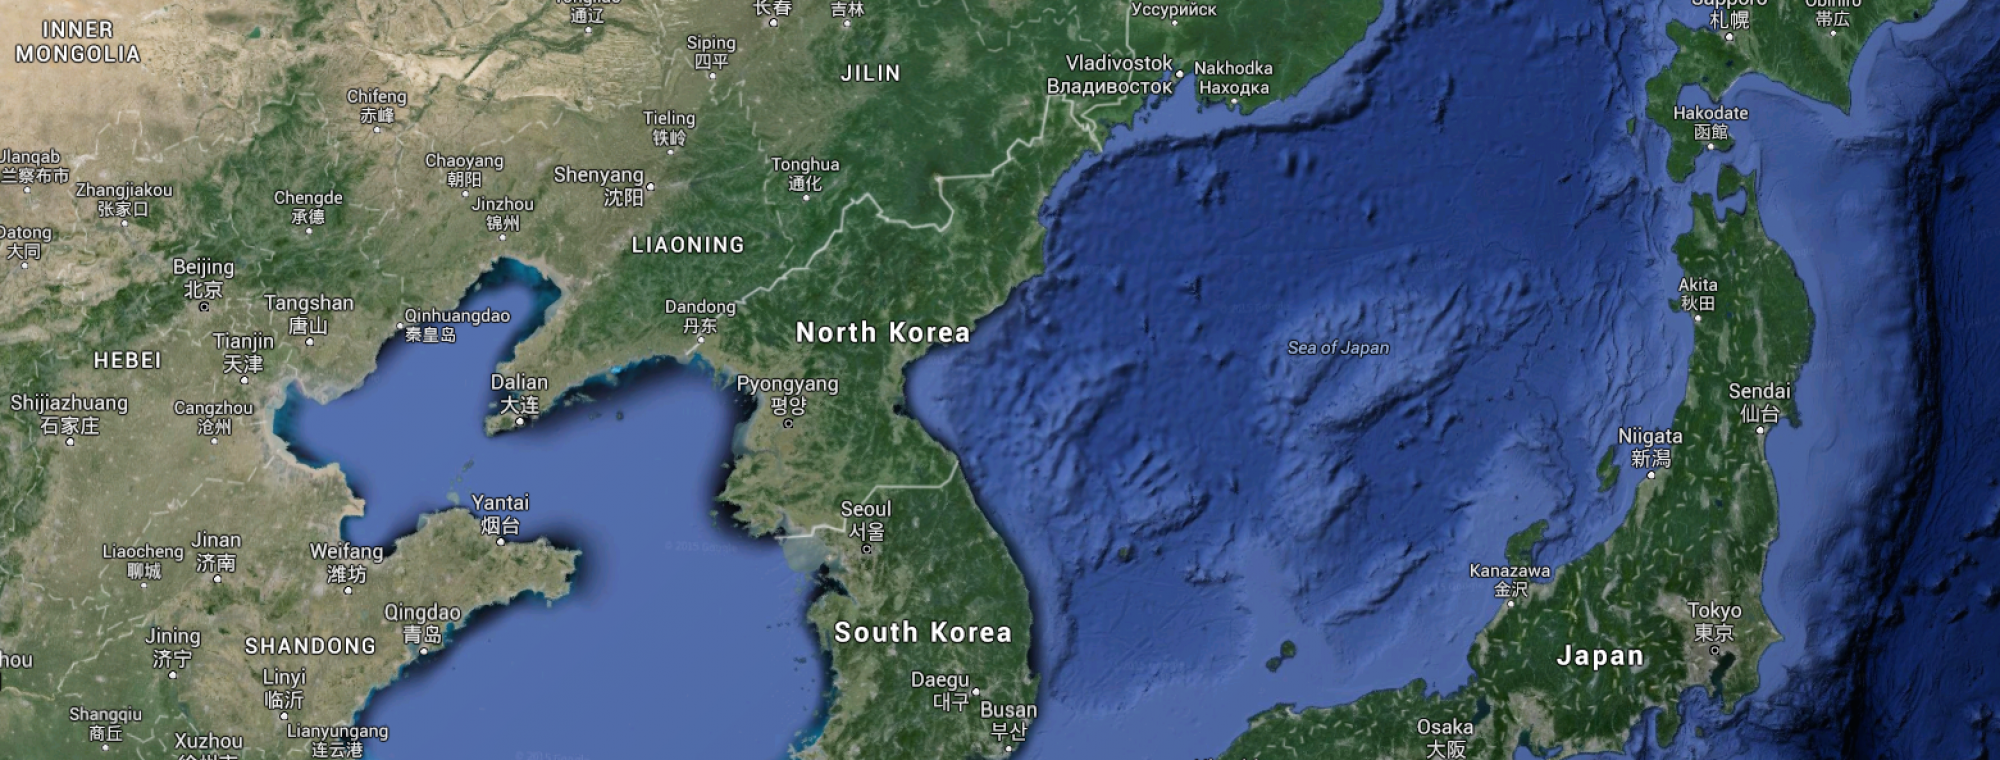 North Korea and environs